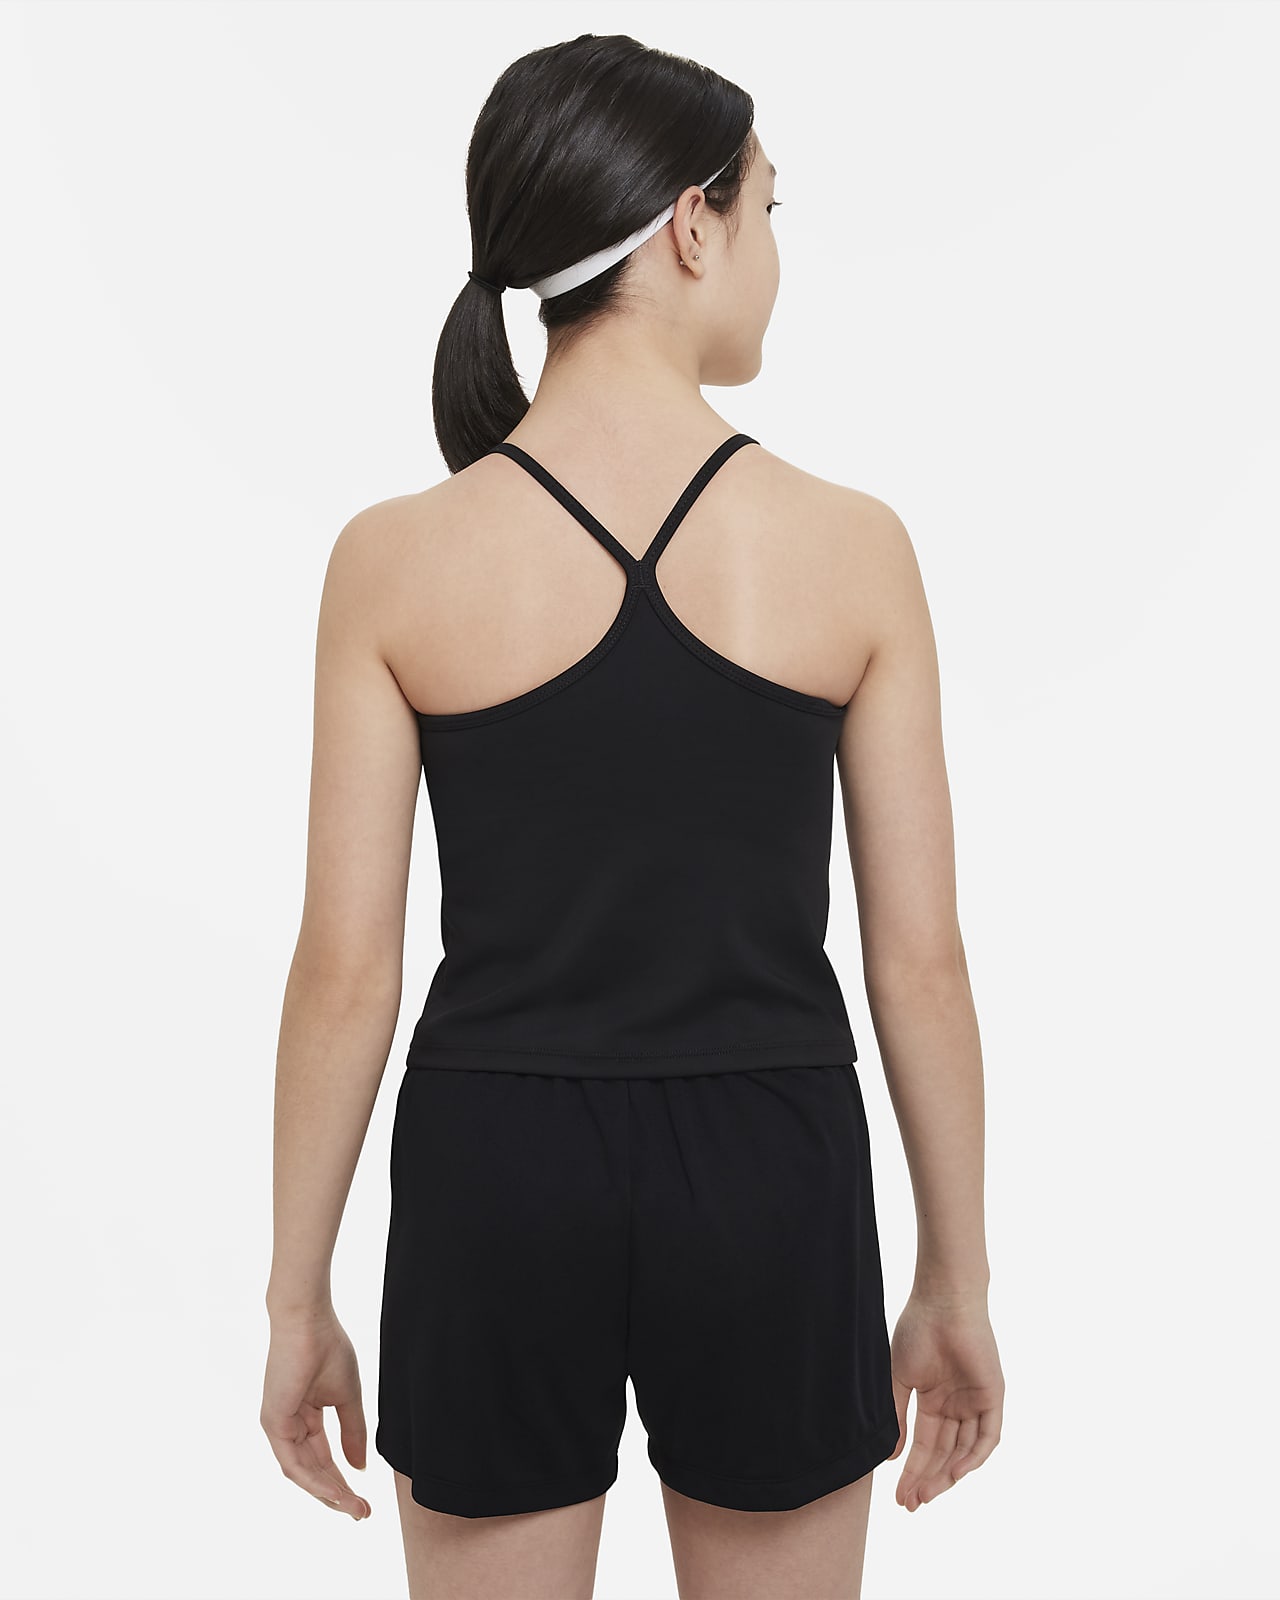 Débardeur Nike Dri-FIT Ready - Débardeurs - Vêtements de sport